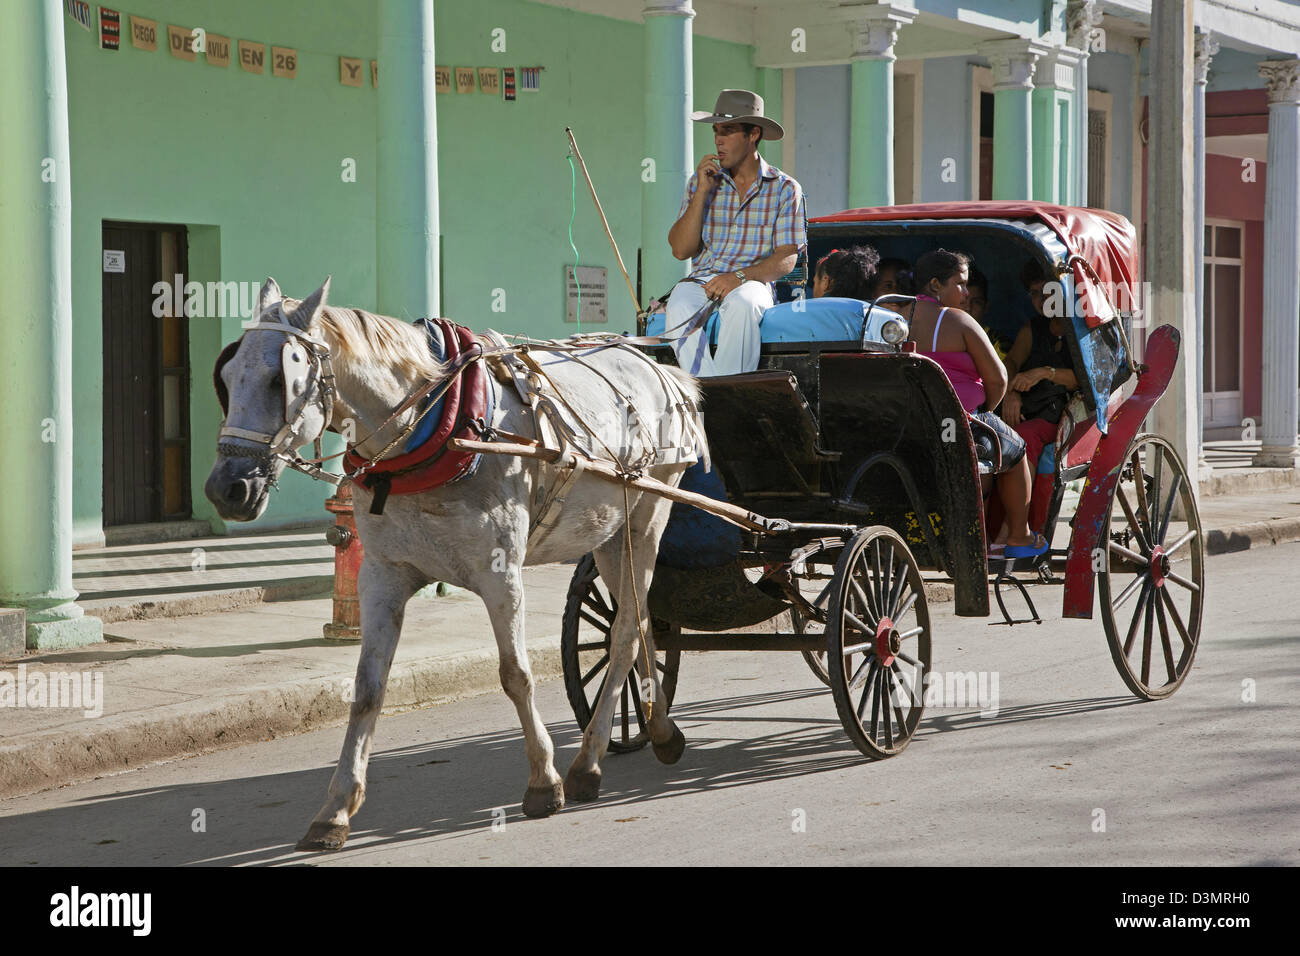 Transports publics par cheval et un chariot à Ciego de Avila, Cuba, Caraïbes Banque D'Images